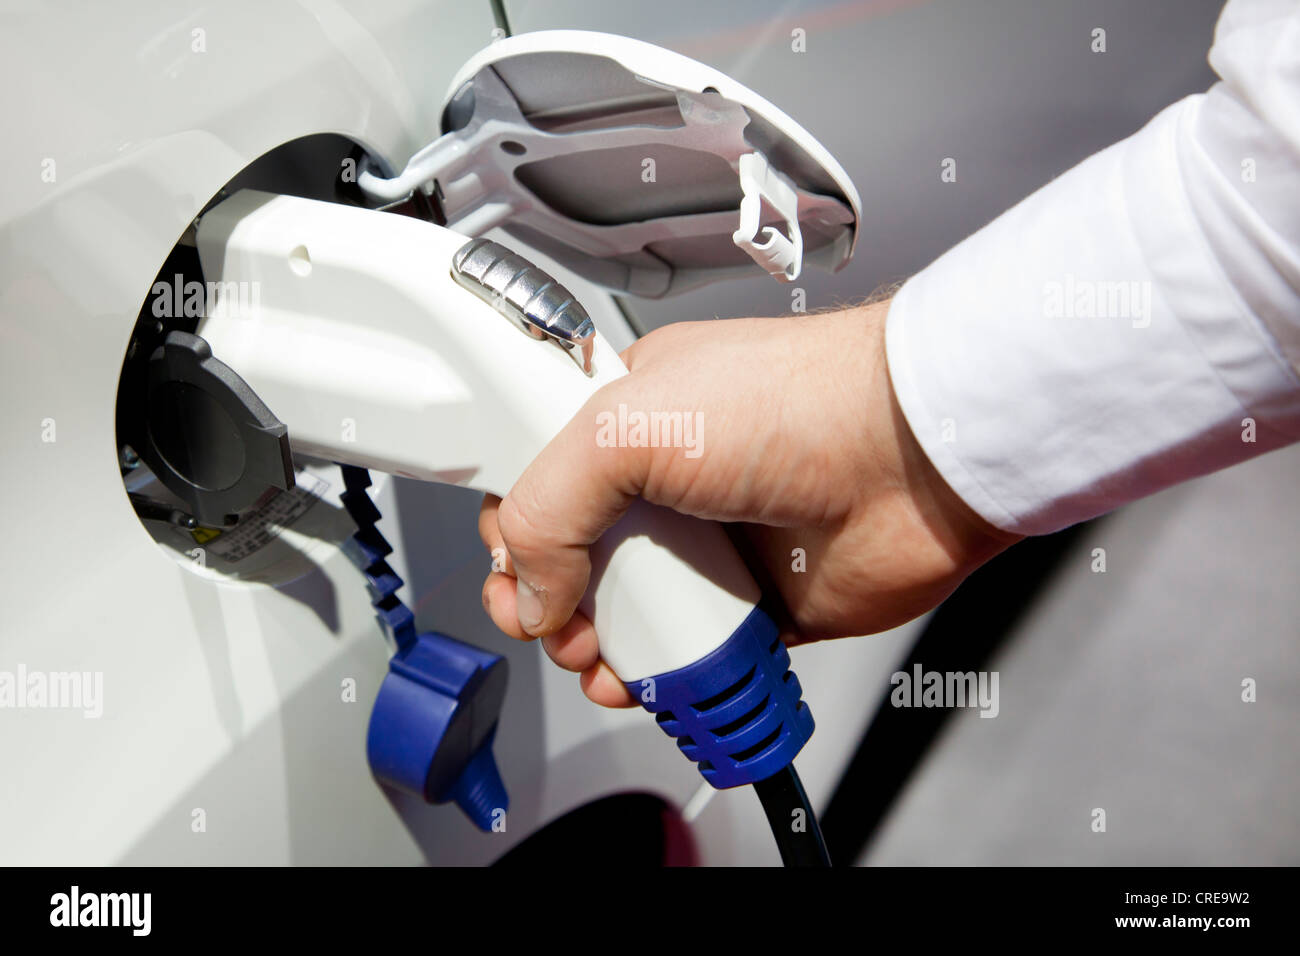 Le chargement avec une prise 230 volts, chargeur de pistolet, sur une voiture électrique, 64e Salon International de l'automobile, de l'AIA, 2011 Banque D'Images